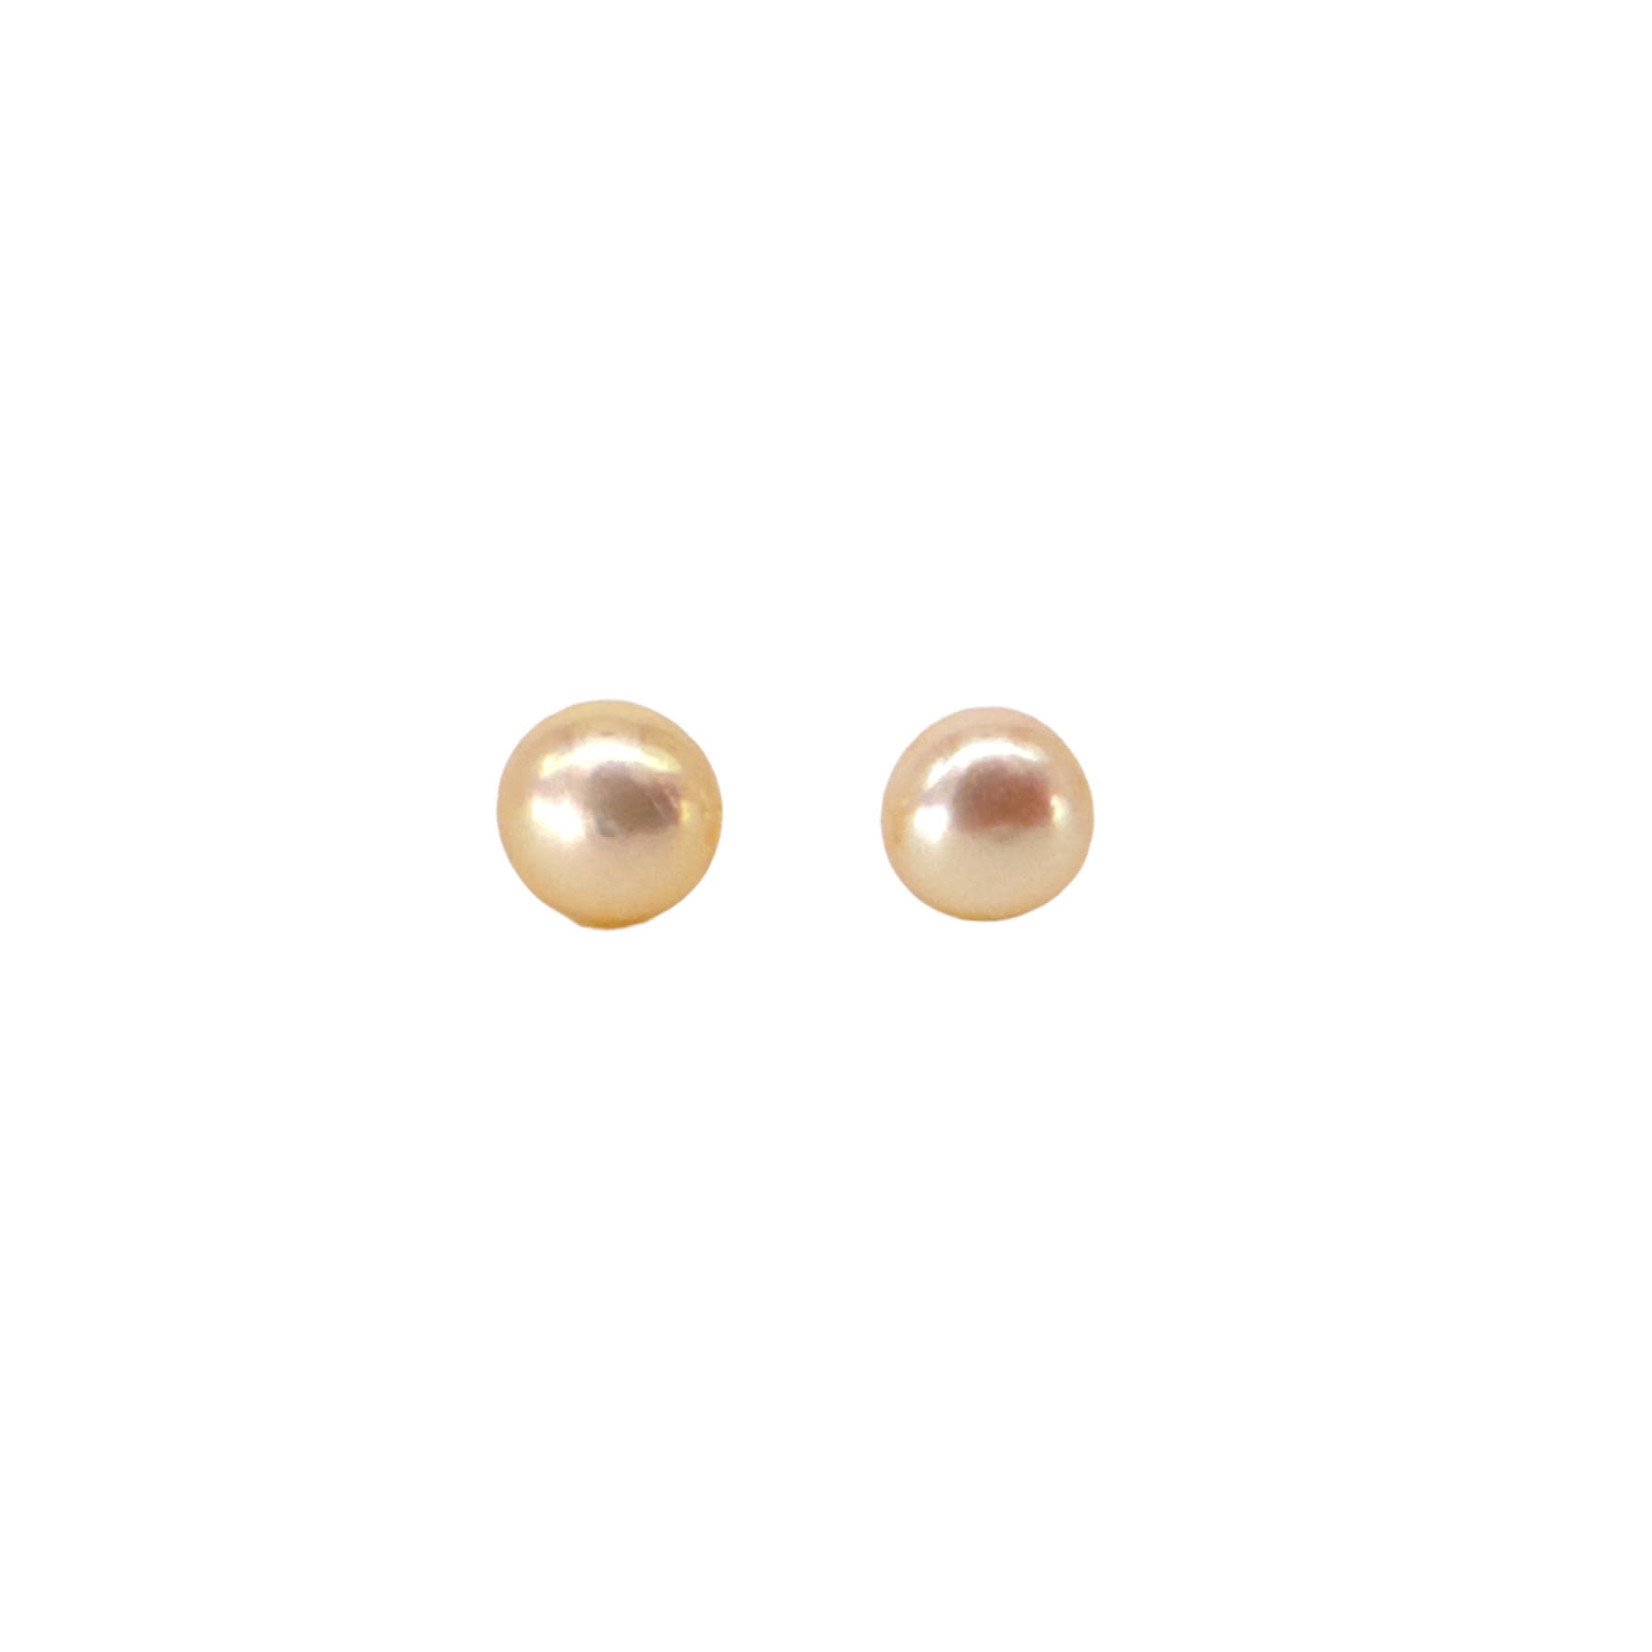 6mm Pearl Stud Earrings Peach